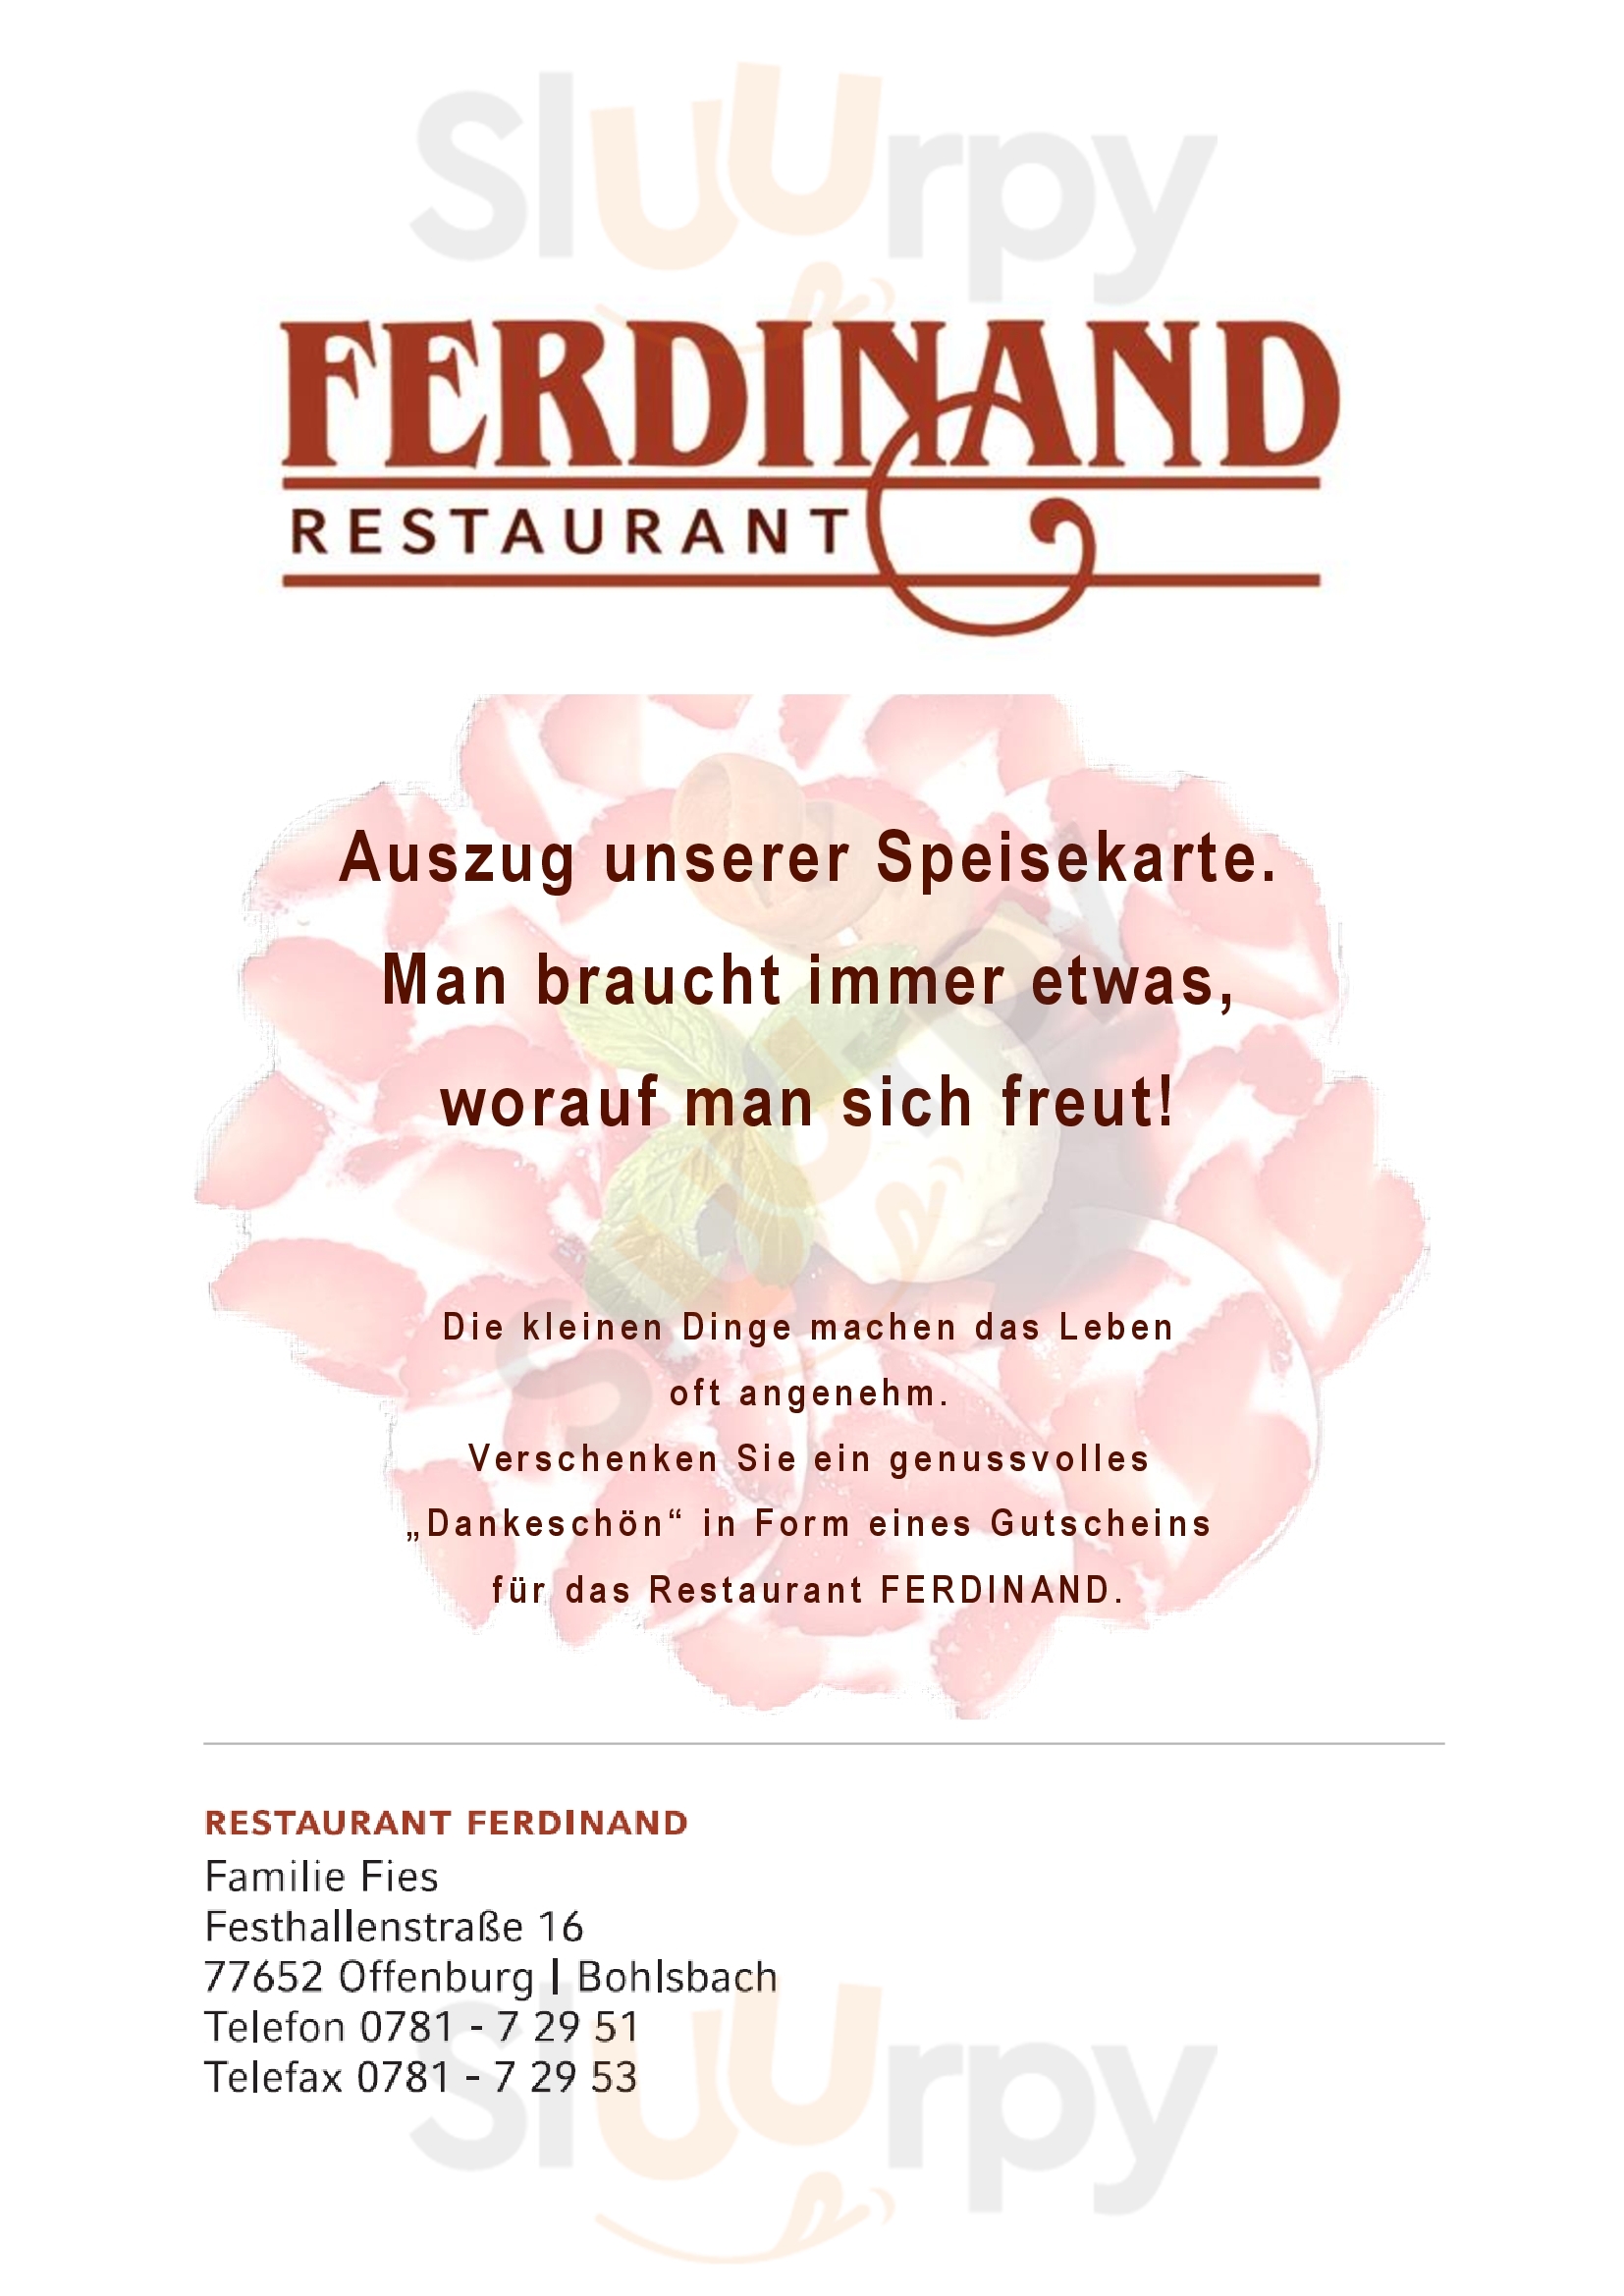 Restaurant Ferdinand Offenburg Menu - 1